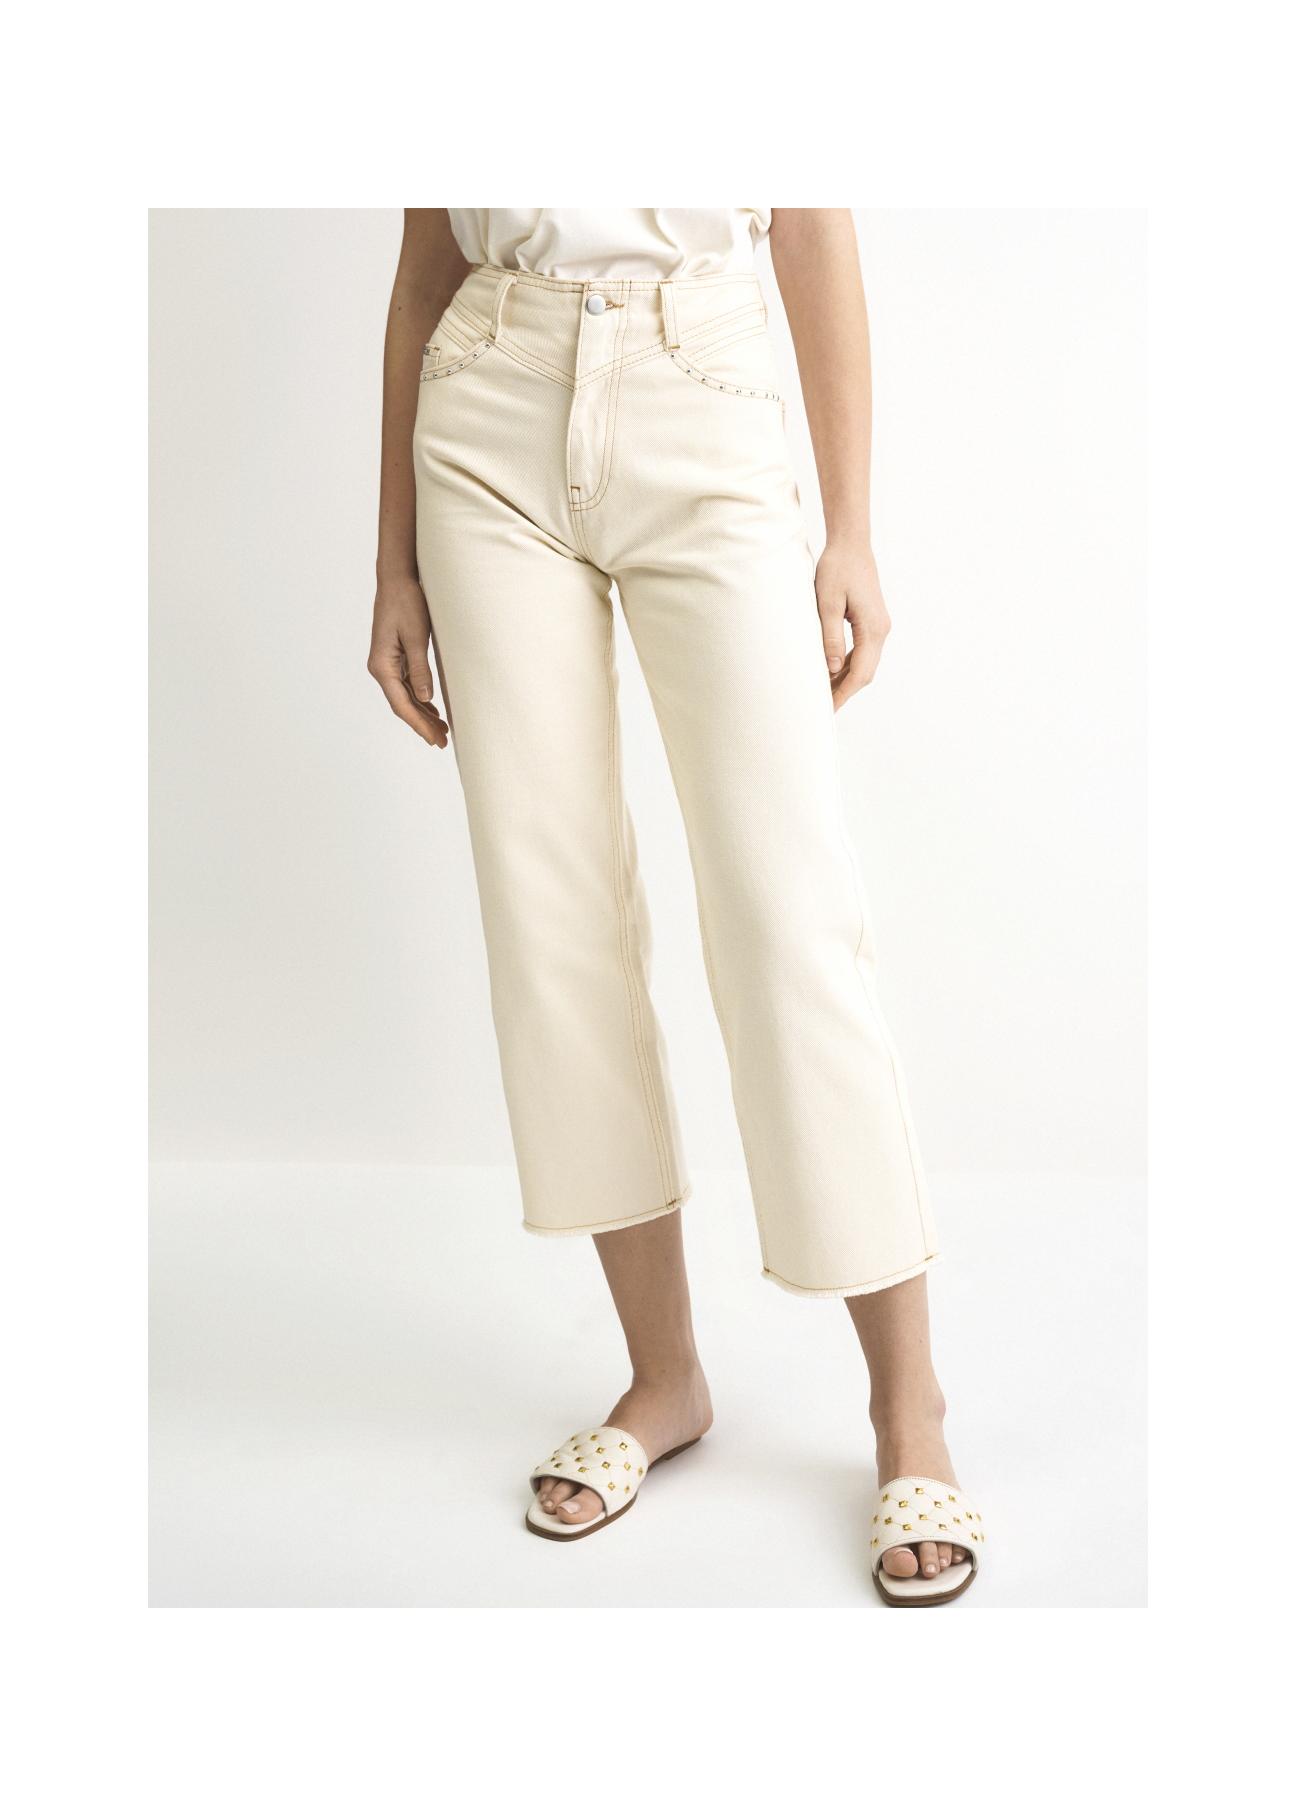 Kremowe spodnie damskie z wysokim stanem SPODT-0066-12(W22)